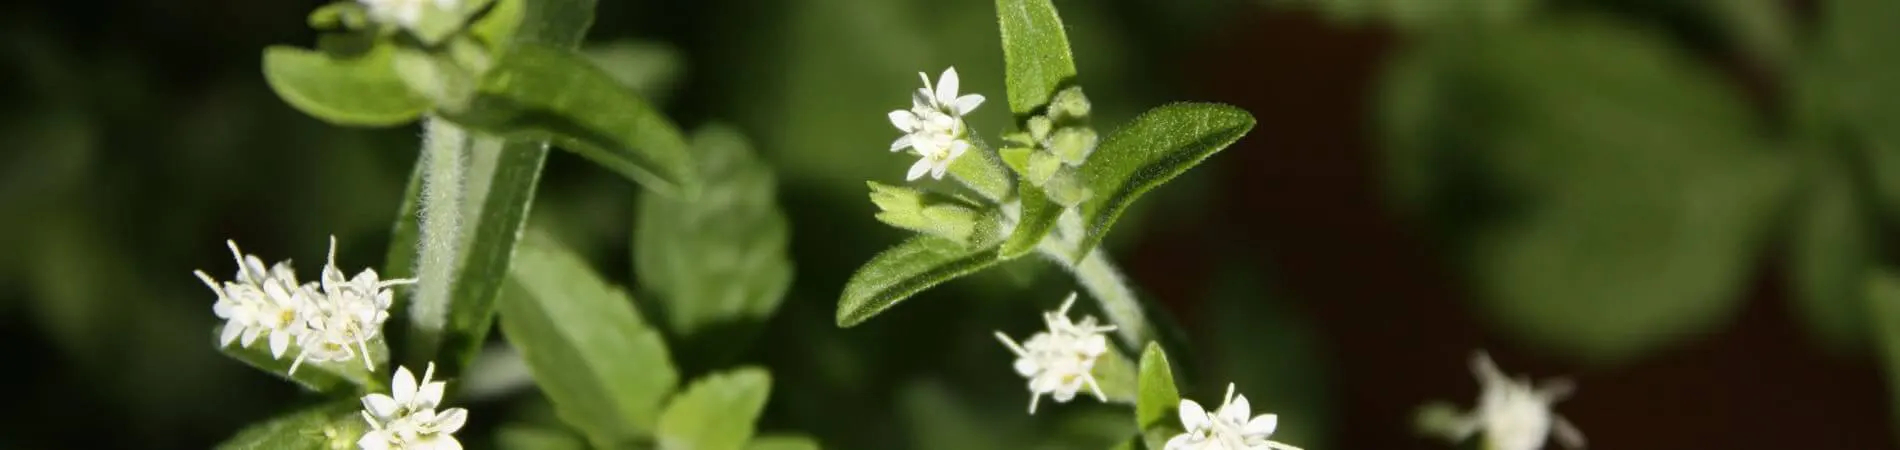 Was ist Stevia - Blüte der Stevia Pflanze - Informationen...